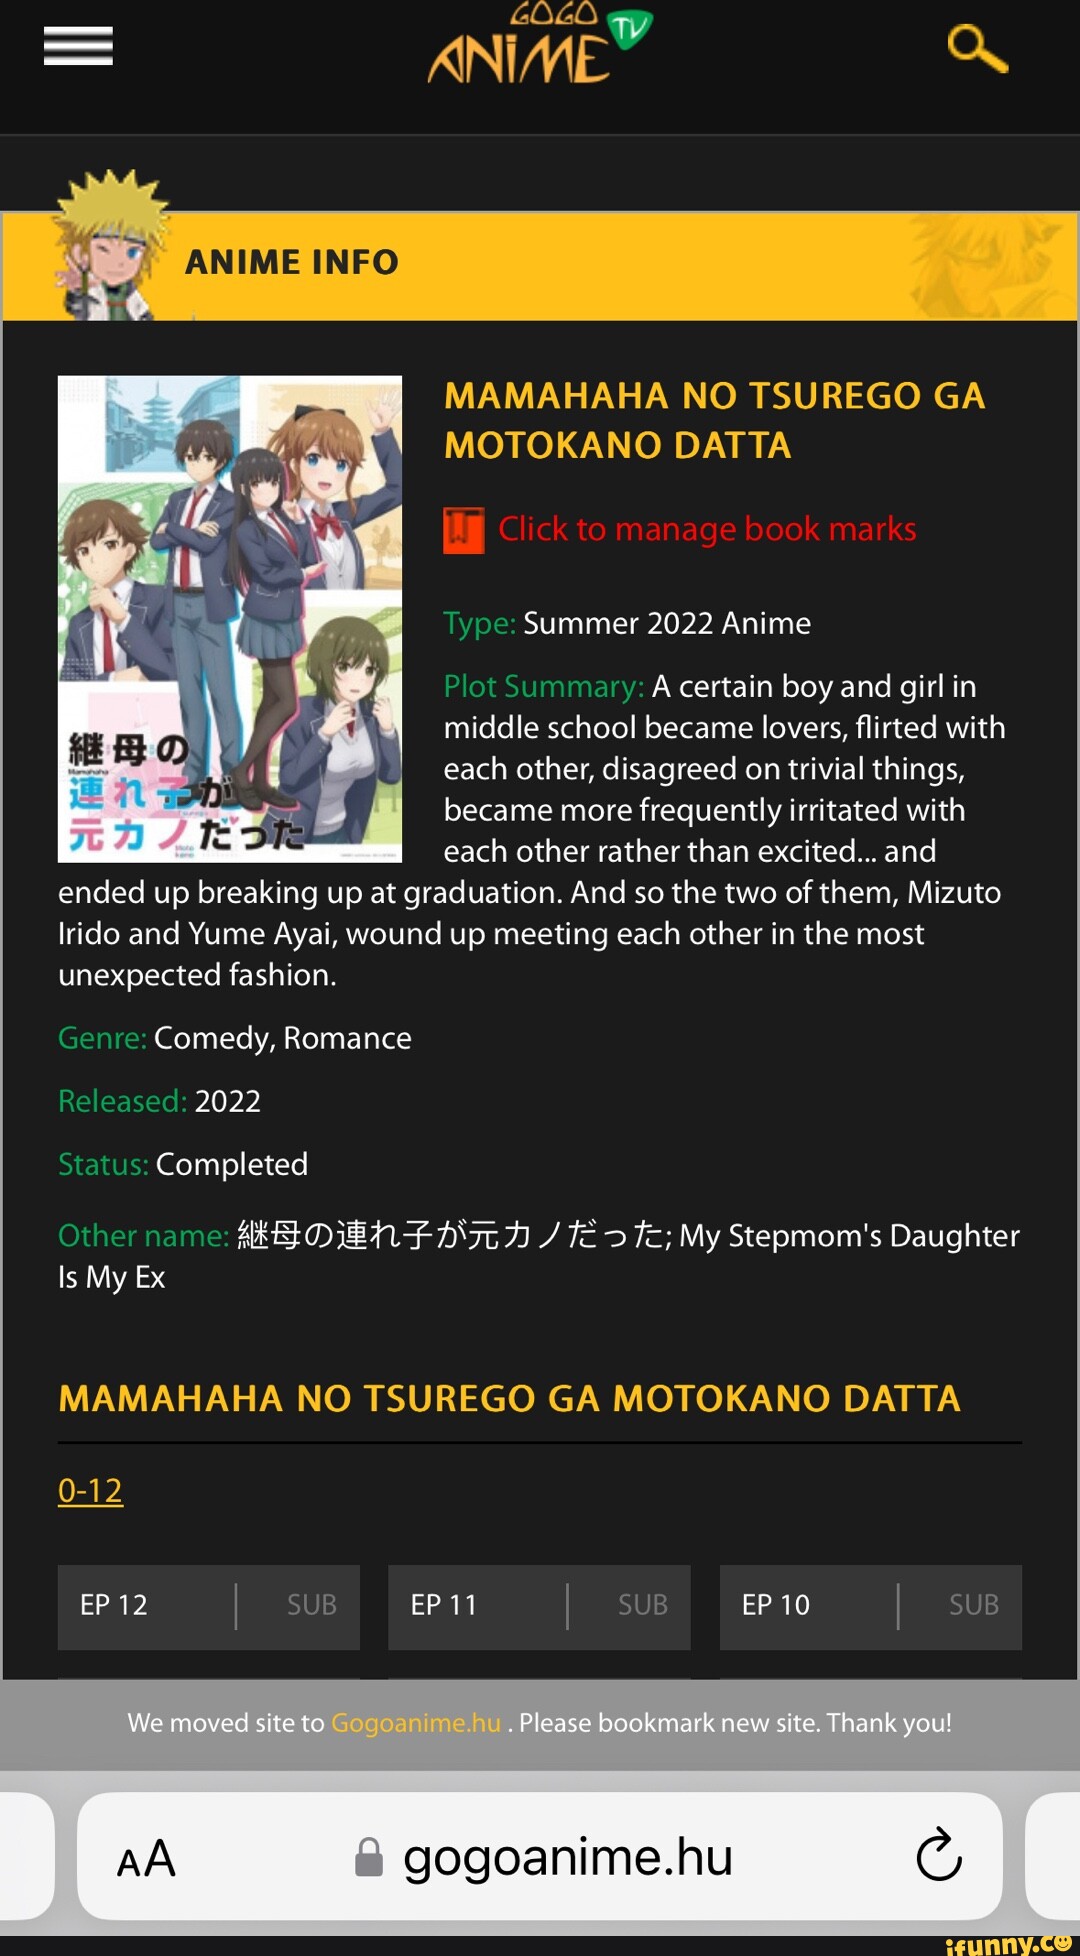 Episode 3 Mamahaha no Tsurego ga Motokano Datta is out! Available